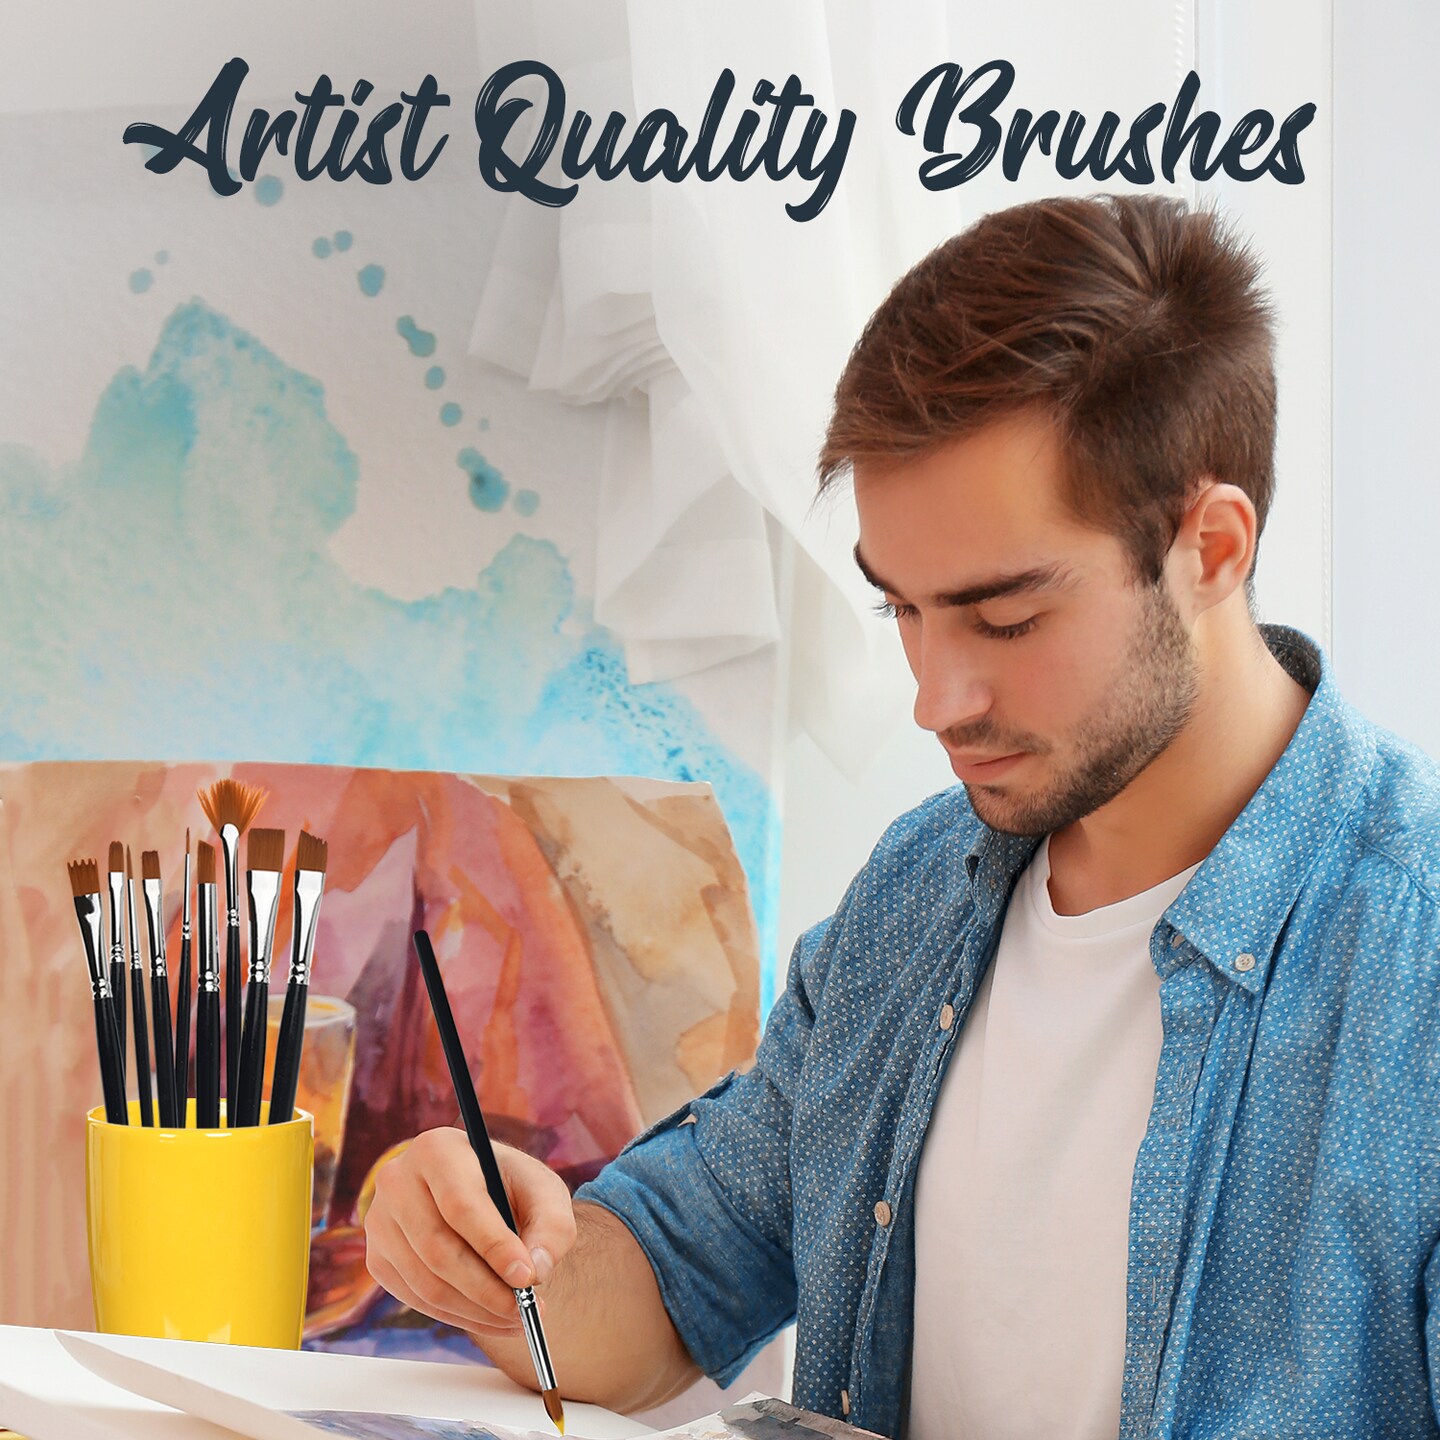 Lartique Acrylic Paint Set, 24 Color Paint Set with Canvases, Paint Brushes, and Paint Palette